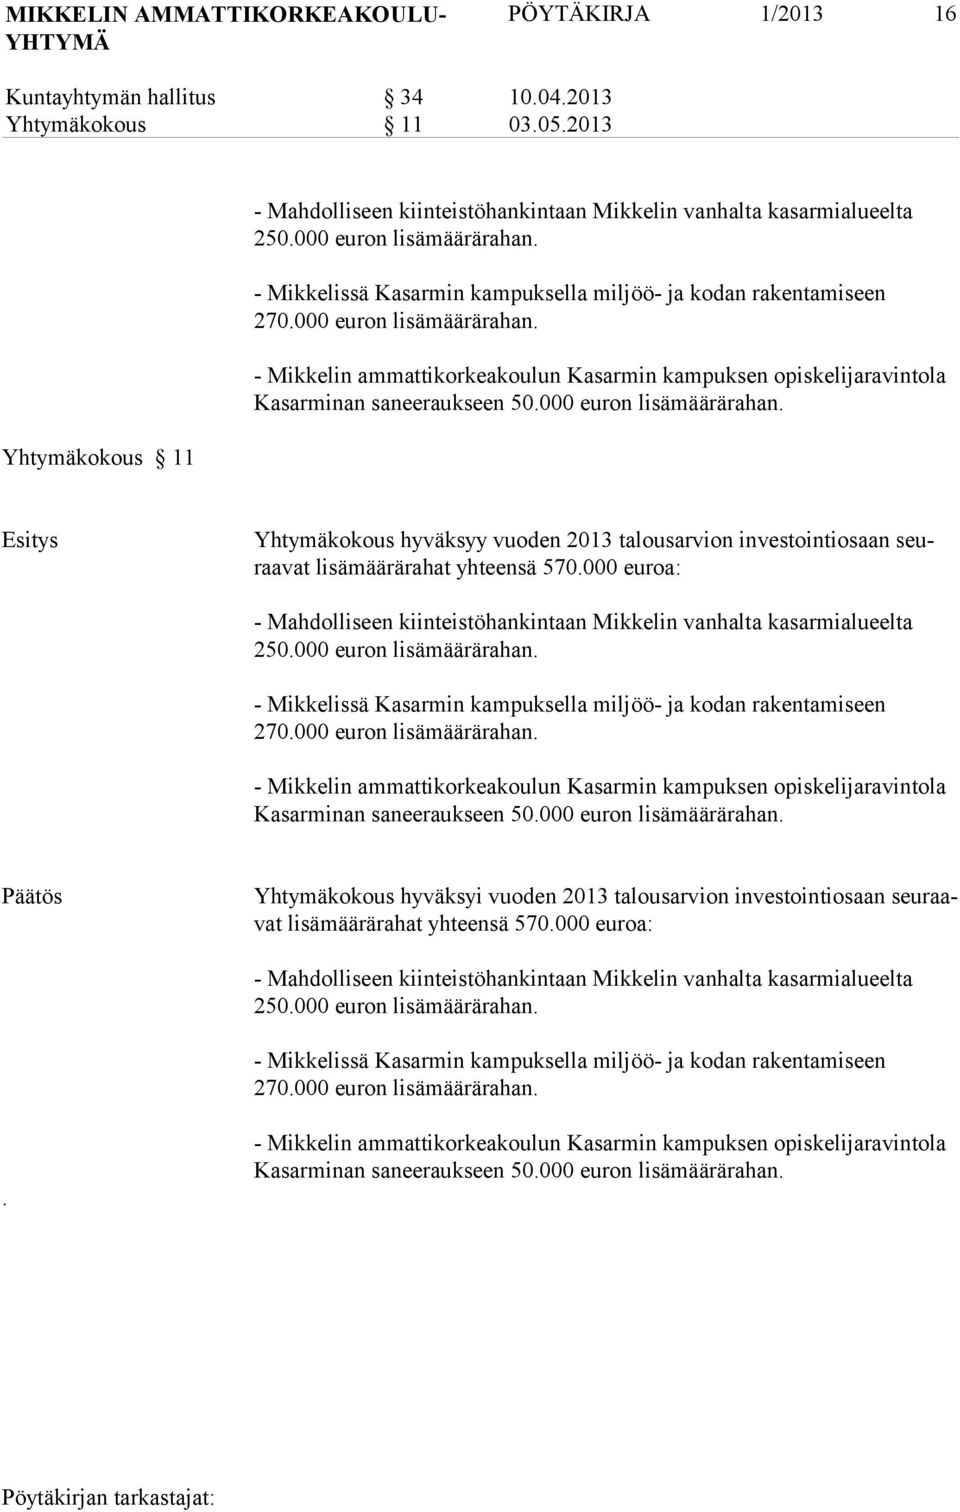 000 euron lisämäärärahan. - Mikkelin ammattikorkeakoulun Kasarmin kampuksen opiskelijaravintola Kasarminan saneeraukseen 50.000 euron lisämäärärahan. Esitys Yhtymäkokous hyväksyy vuoden 2013 talousar vion investointiosaan seuraavat li sä määrärahat yh teensä 570.